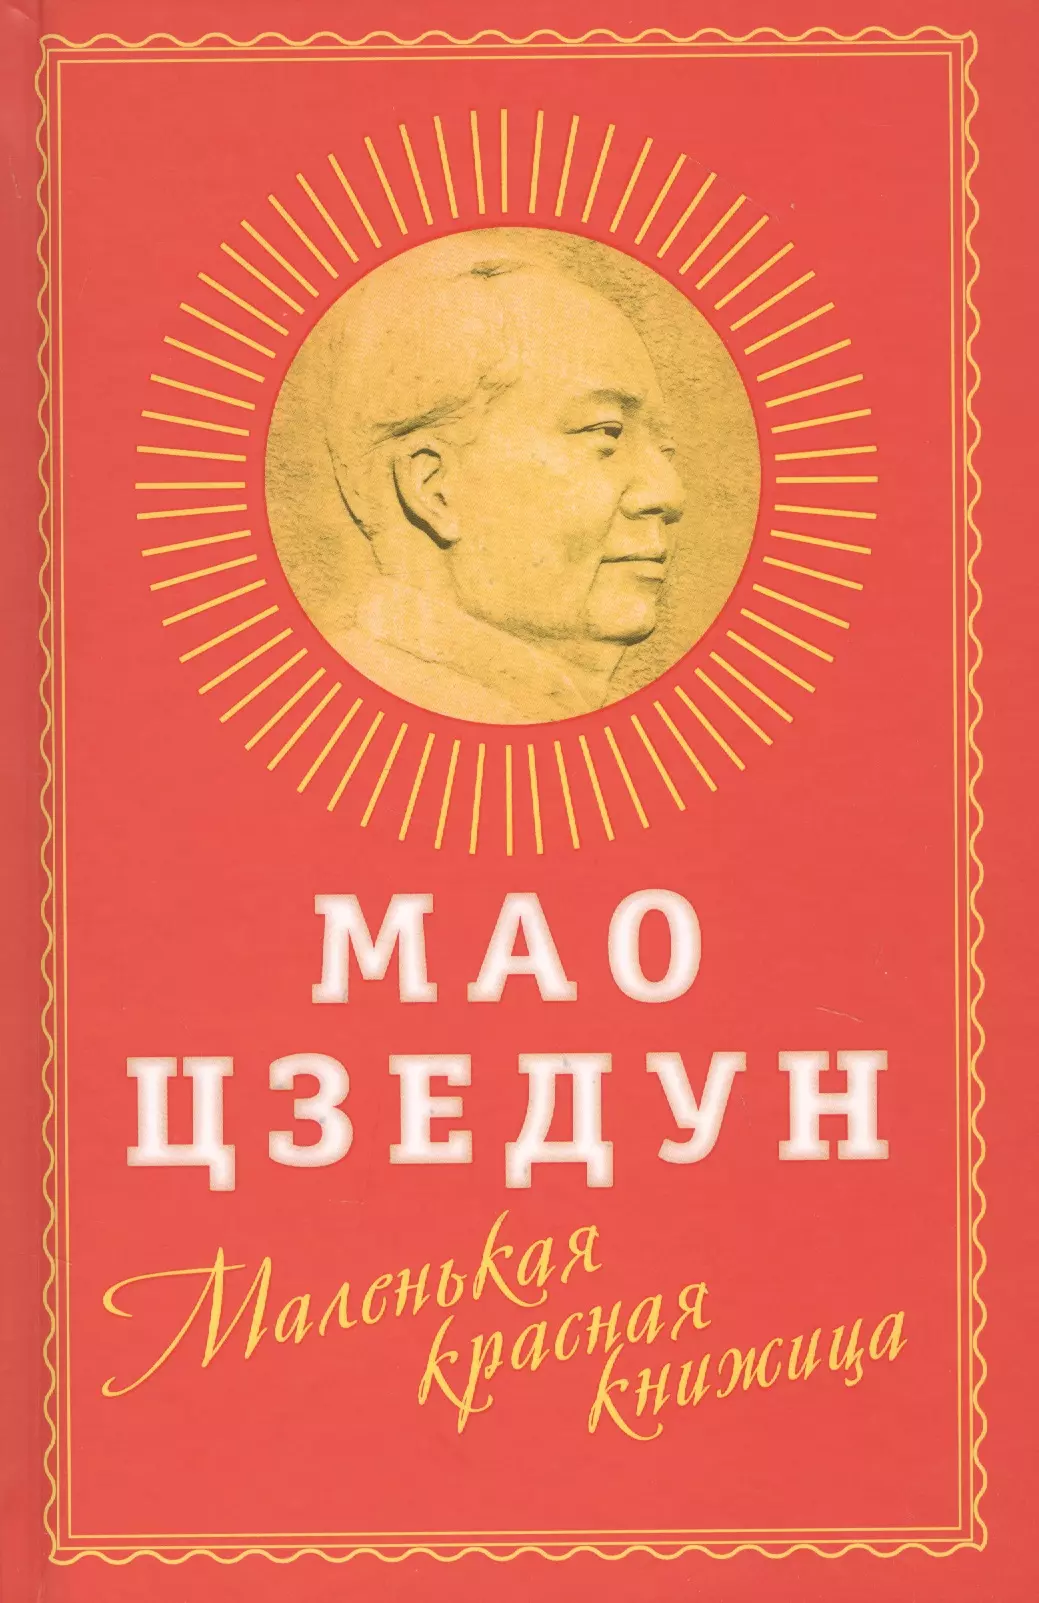 джон кей китай от конфуция до мао цзэдуна Мао Цзэдун Маленькая красная книжица